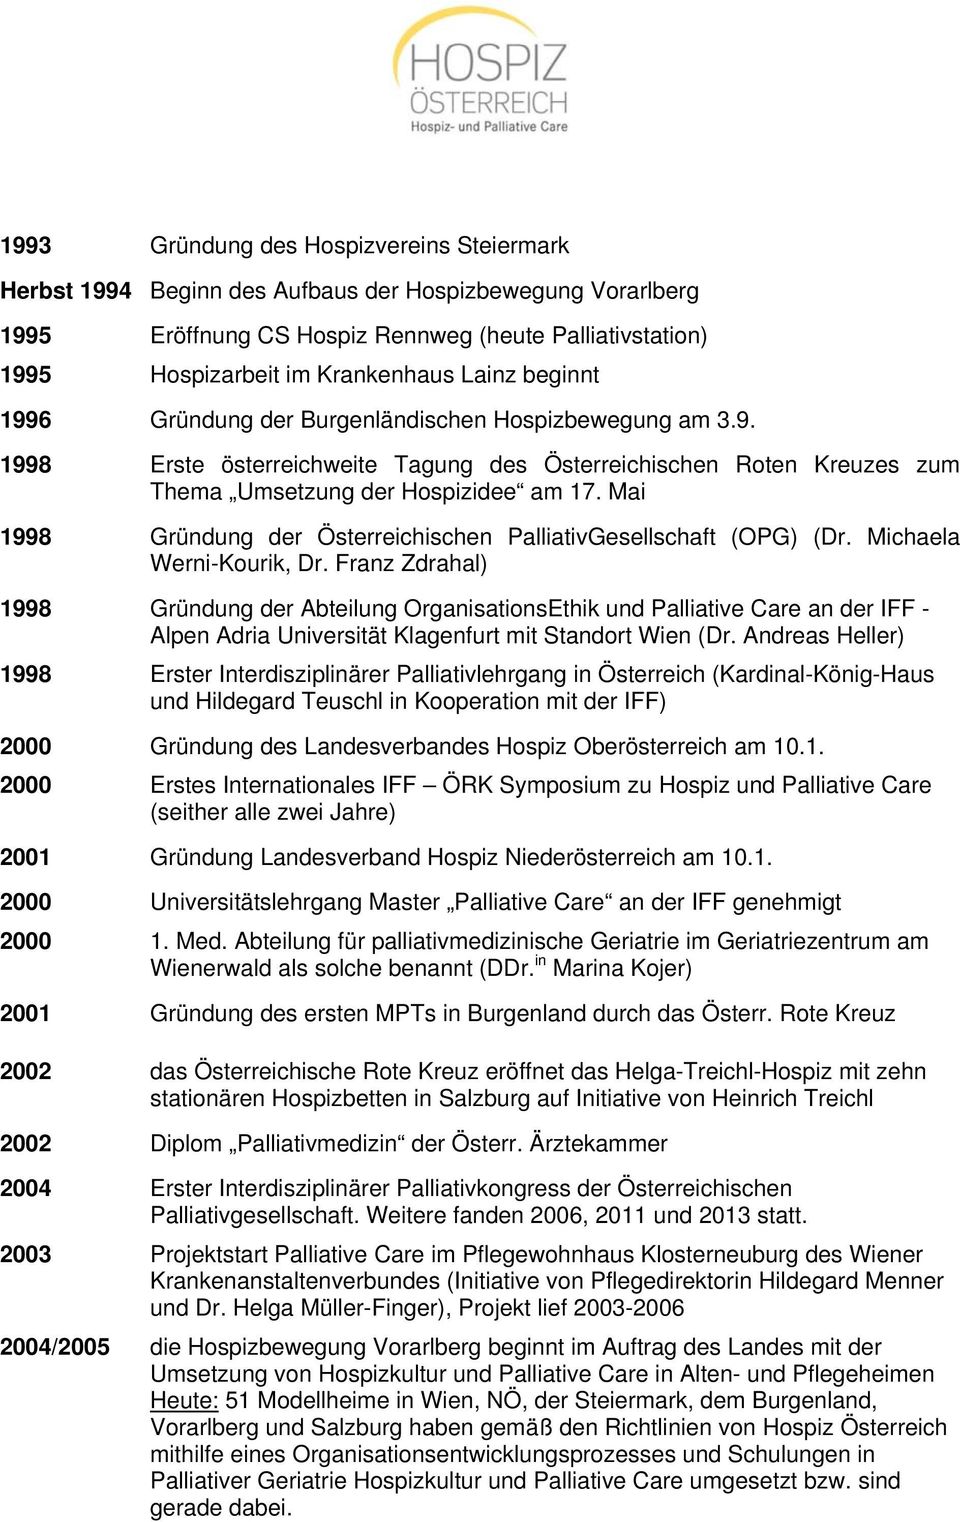 Mai 1998 Gründung der Österreichischen PalliativGesellschaft (OPG) (Dr. Michaela Werni-Kourik, Dr.